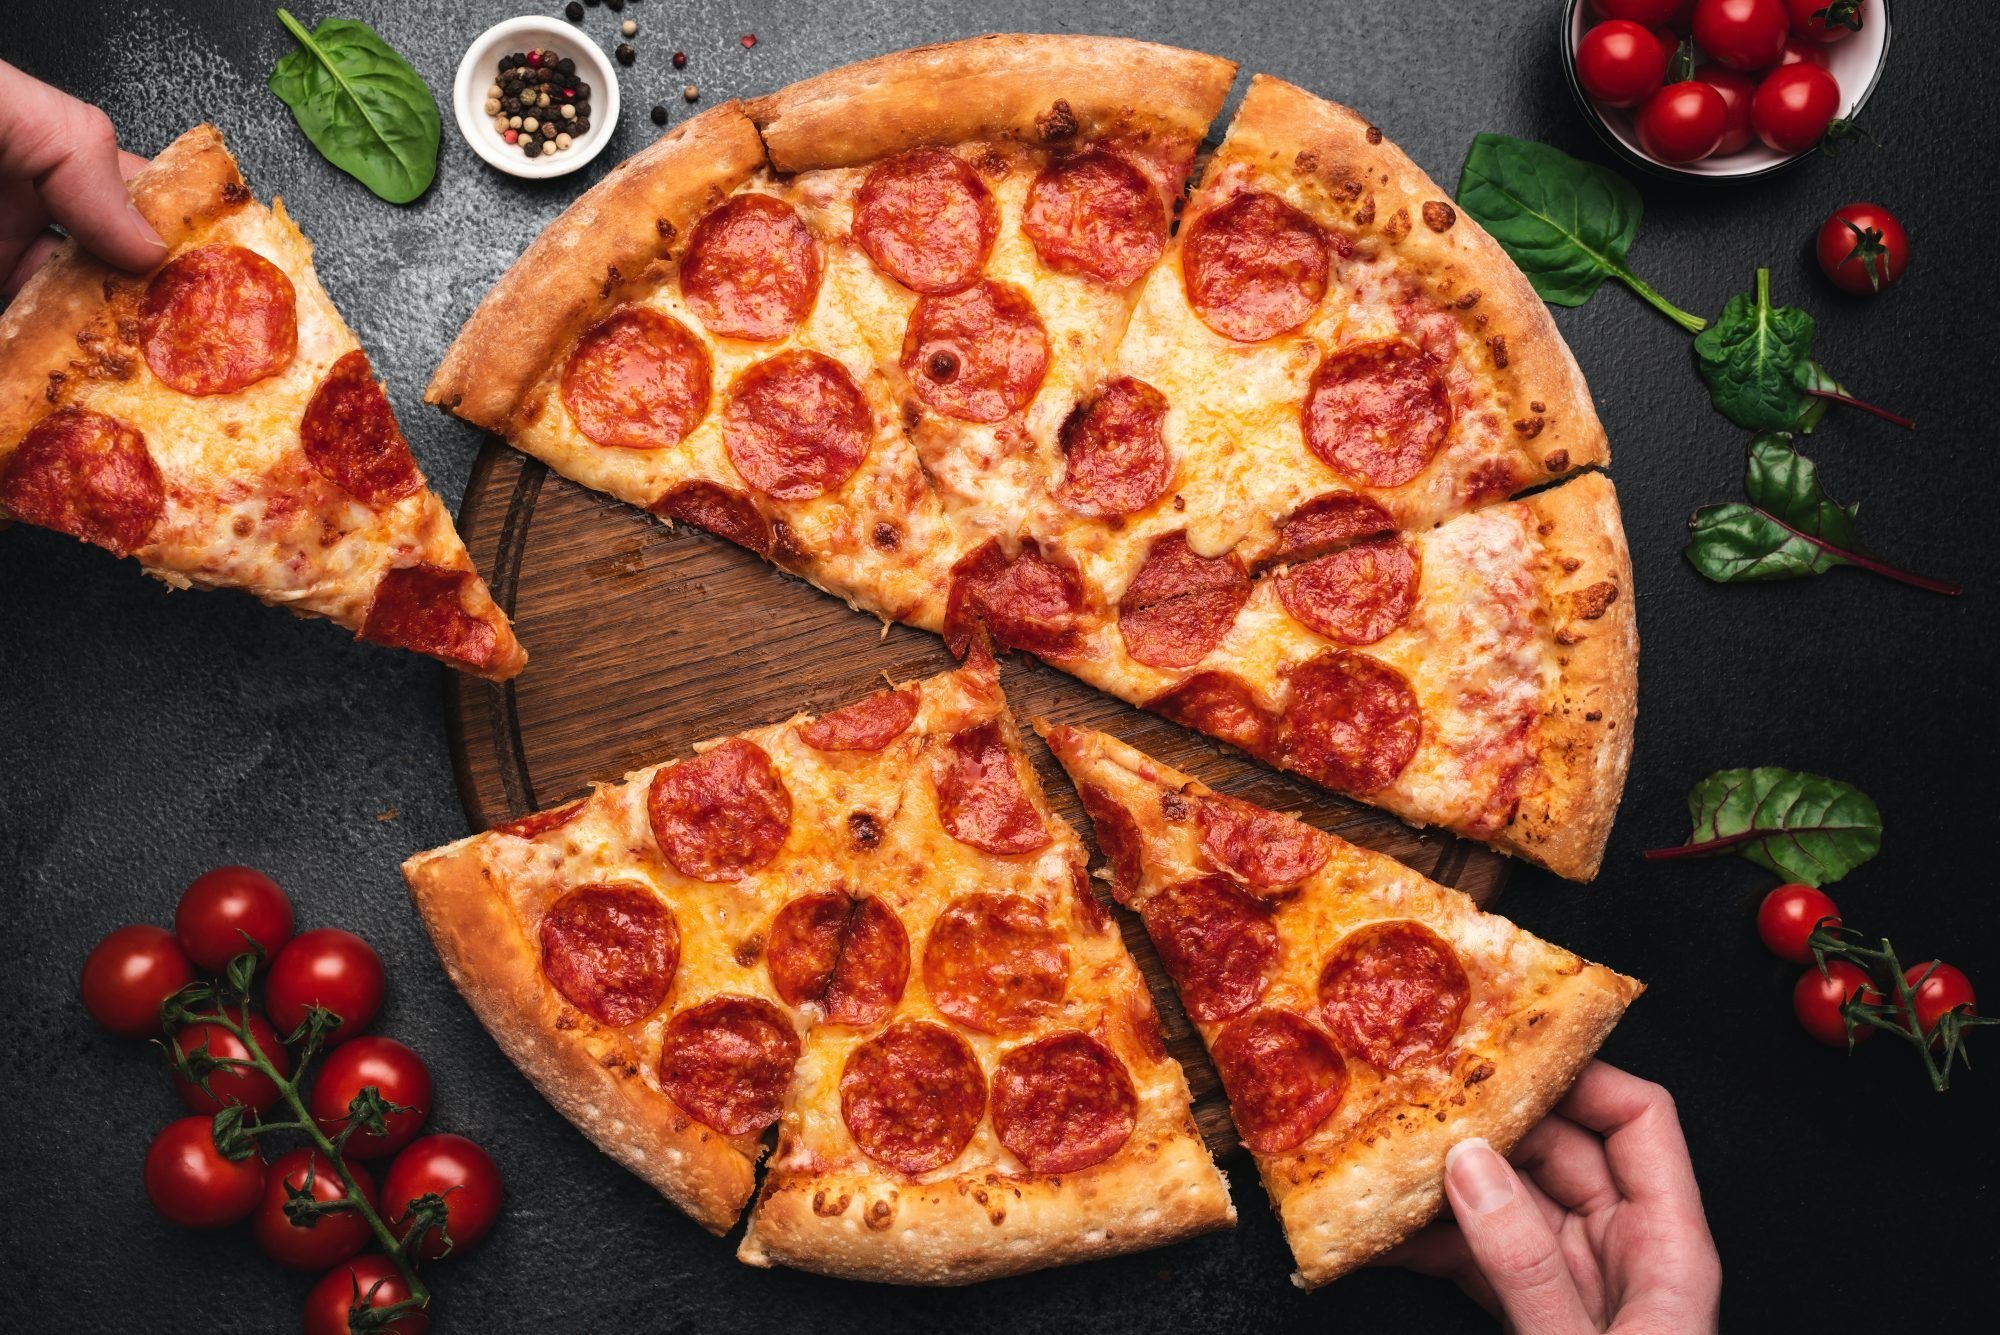 римская пицца и неаполитанская в чем разница фото 73